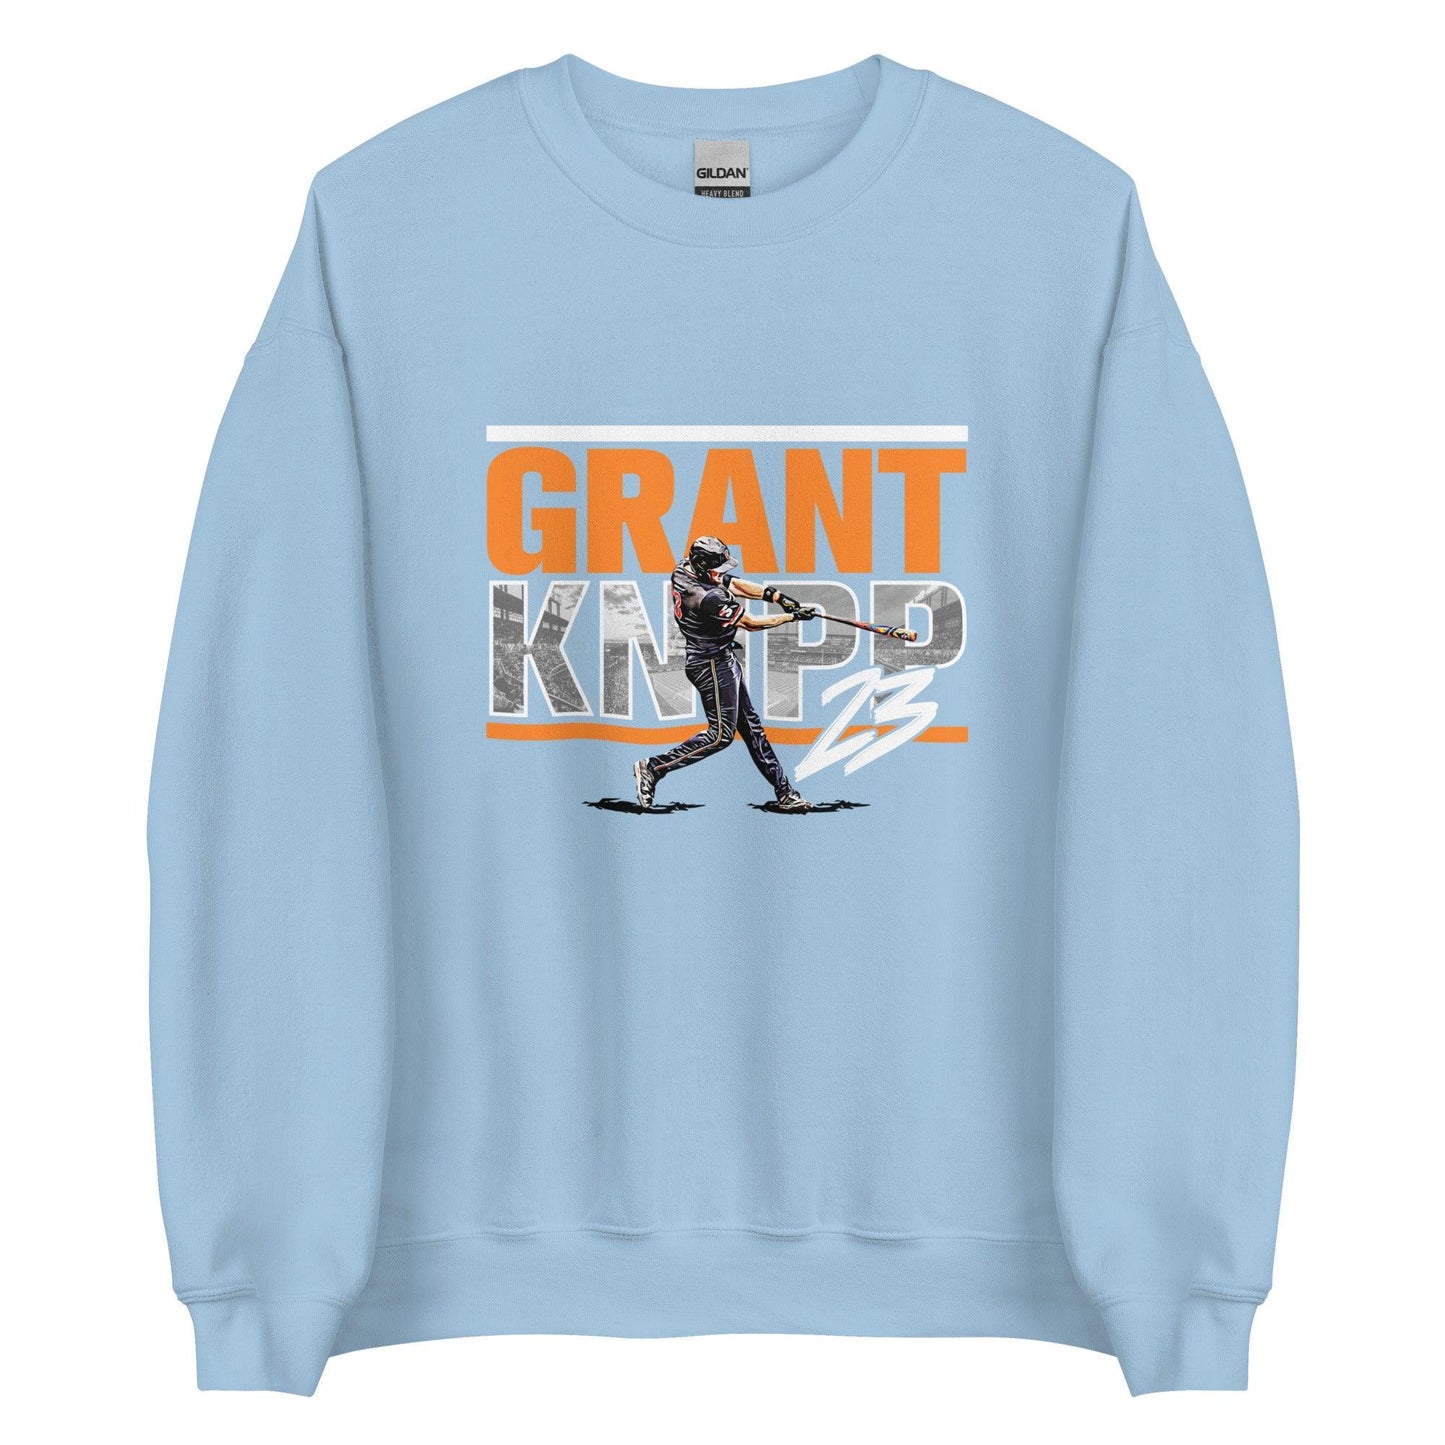 Grant Knipp "Gameday" Sweatshirt - Fan Arch